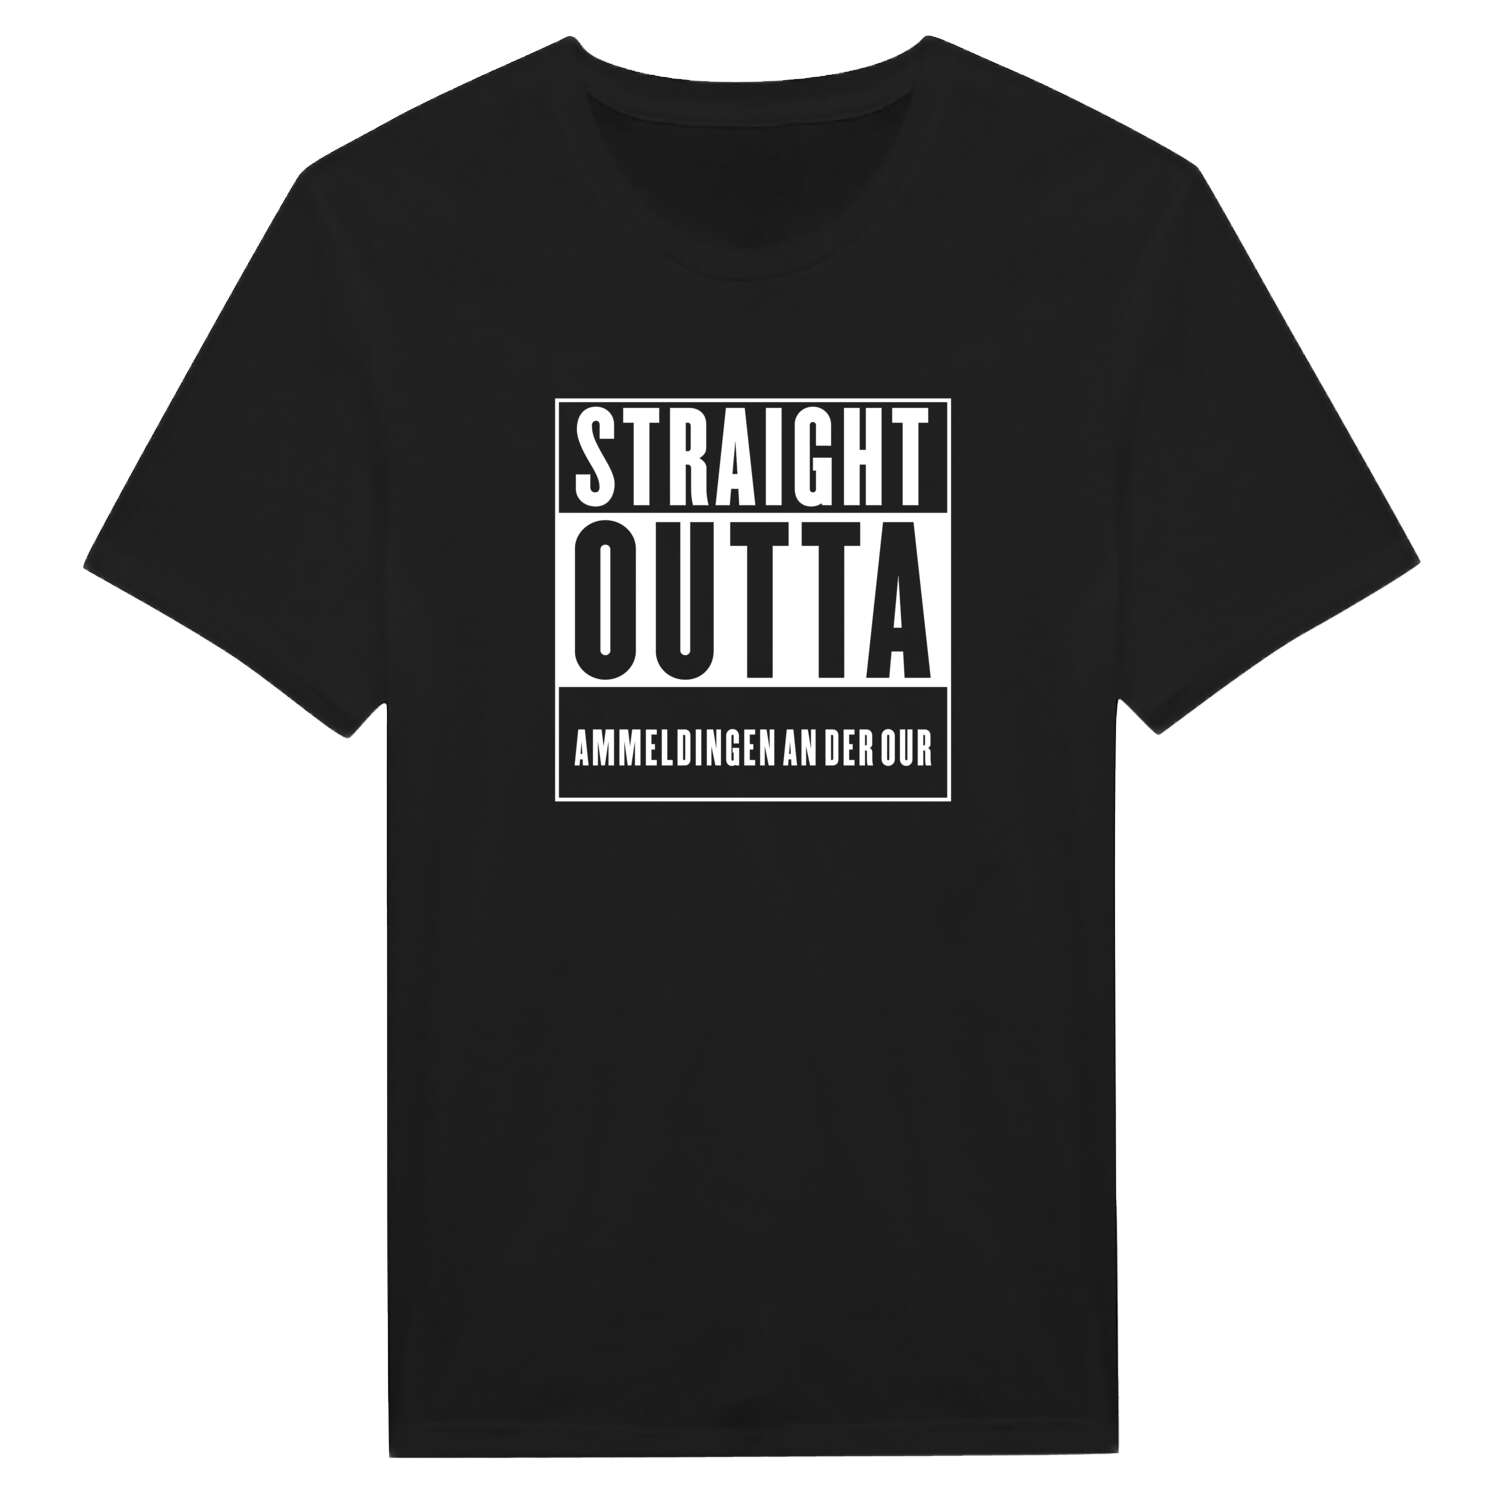 Ammeldingen an der Our T-Shirt »Straight Outta«